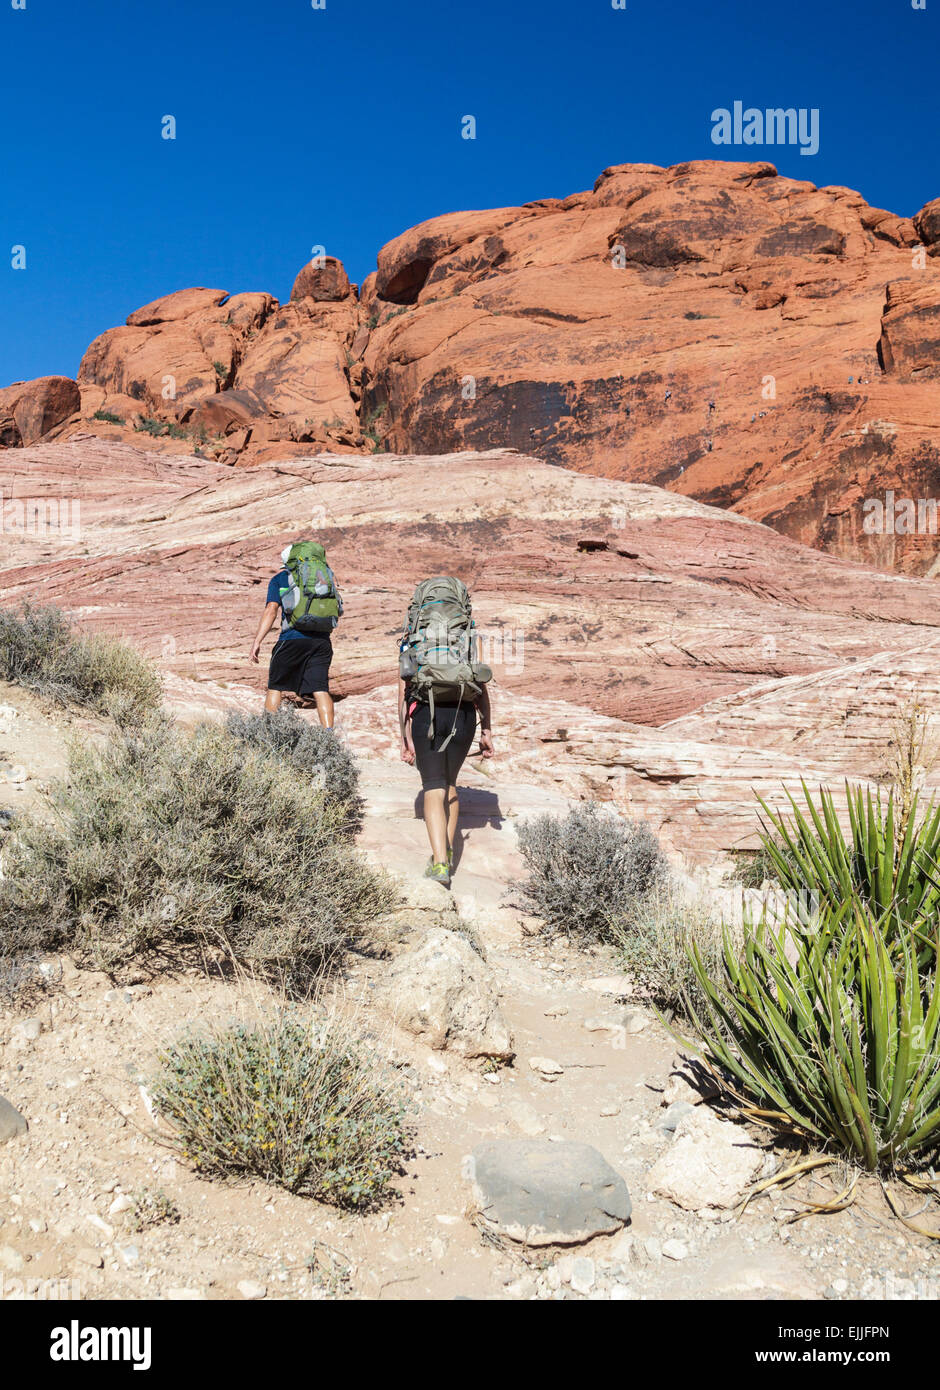 Kletterer Wandern mit Getriebe am Red Rock Canyon National Conservation Area, ungefähr 20 Meilen von Las Vegas; Kletterer in Ferne Stockfoto